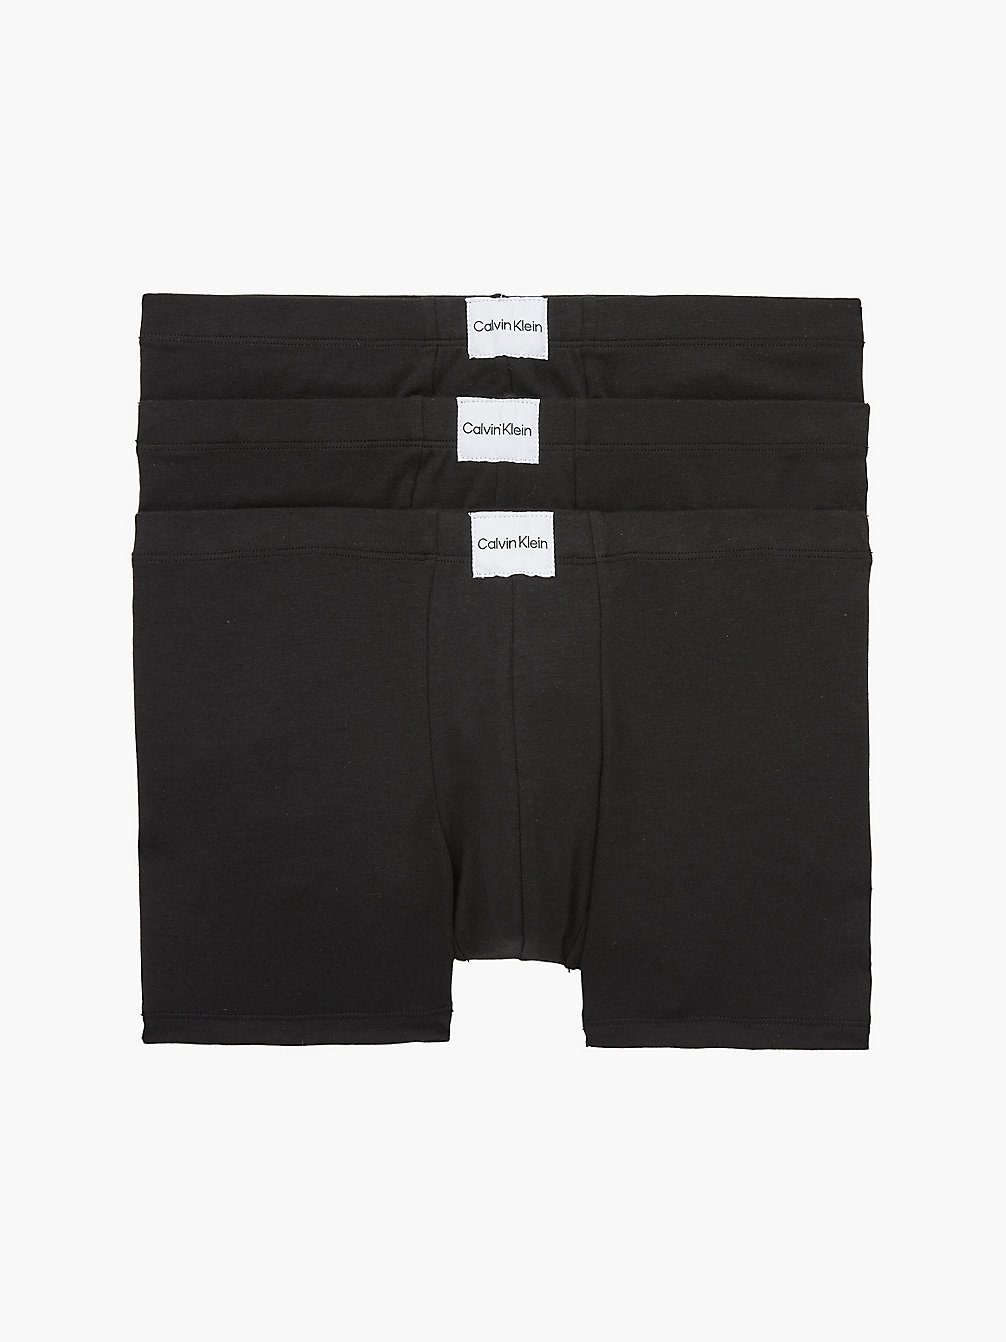 BLACK/BLACK/BLACK Lot De 3 Boxers - Pure Cotton undefined hommes Calvin Klein